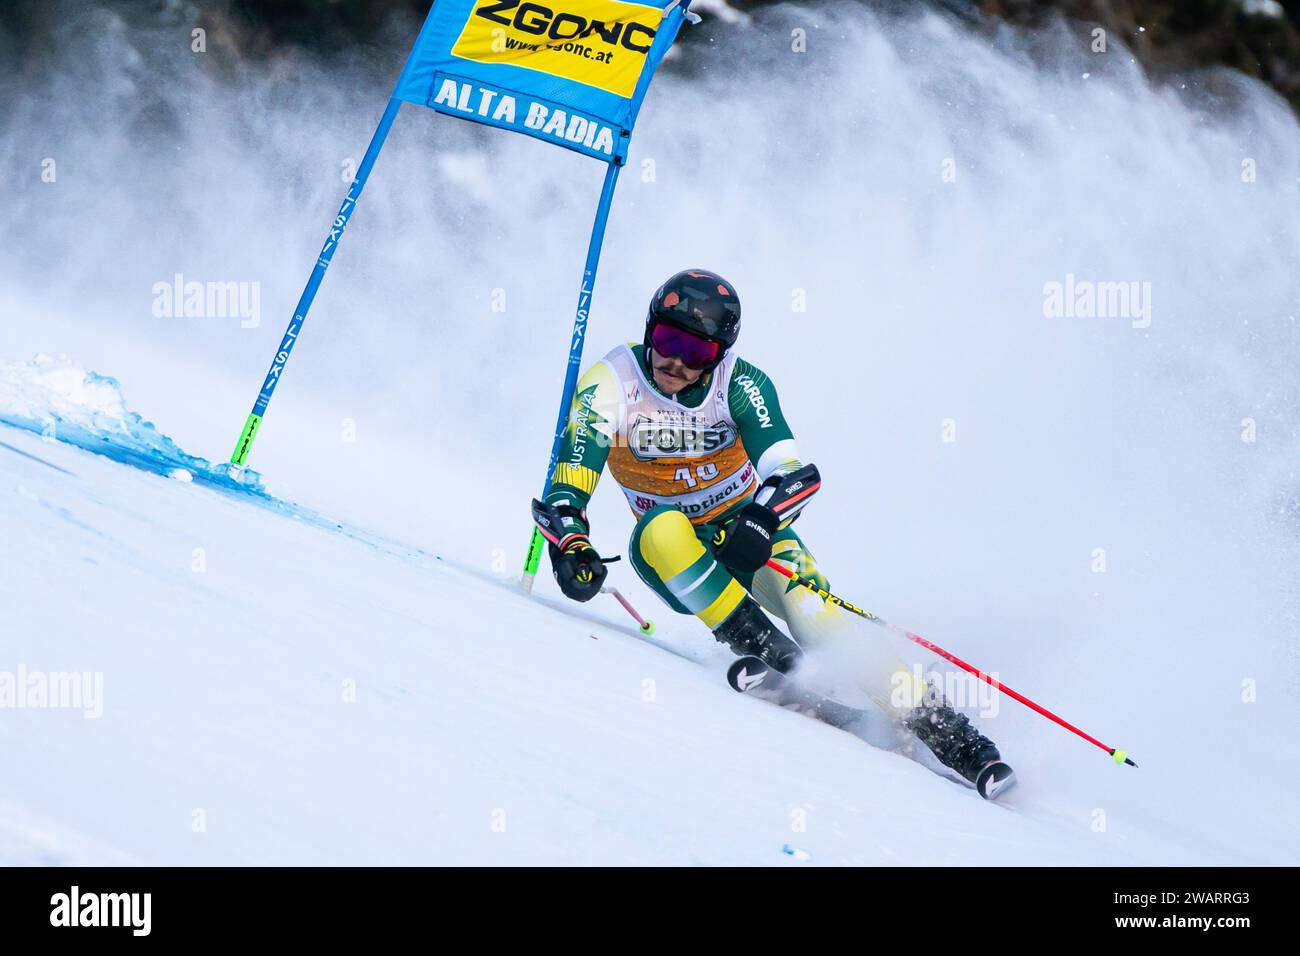 Alta Badia, Italia 17 dicembre 2023. MUHLEN-SCHULTE Louis (AUS) gareggia nella Coppa del mondo di sci alpino Audi Fis 2023-24 Slalom gigante maschile sulla Gran Bretagna Foto Stock